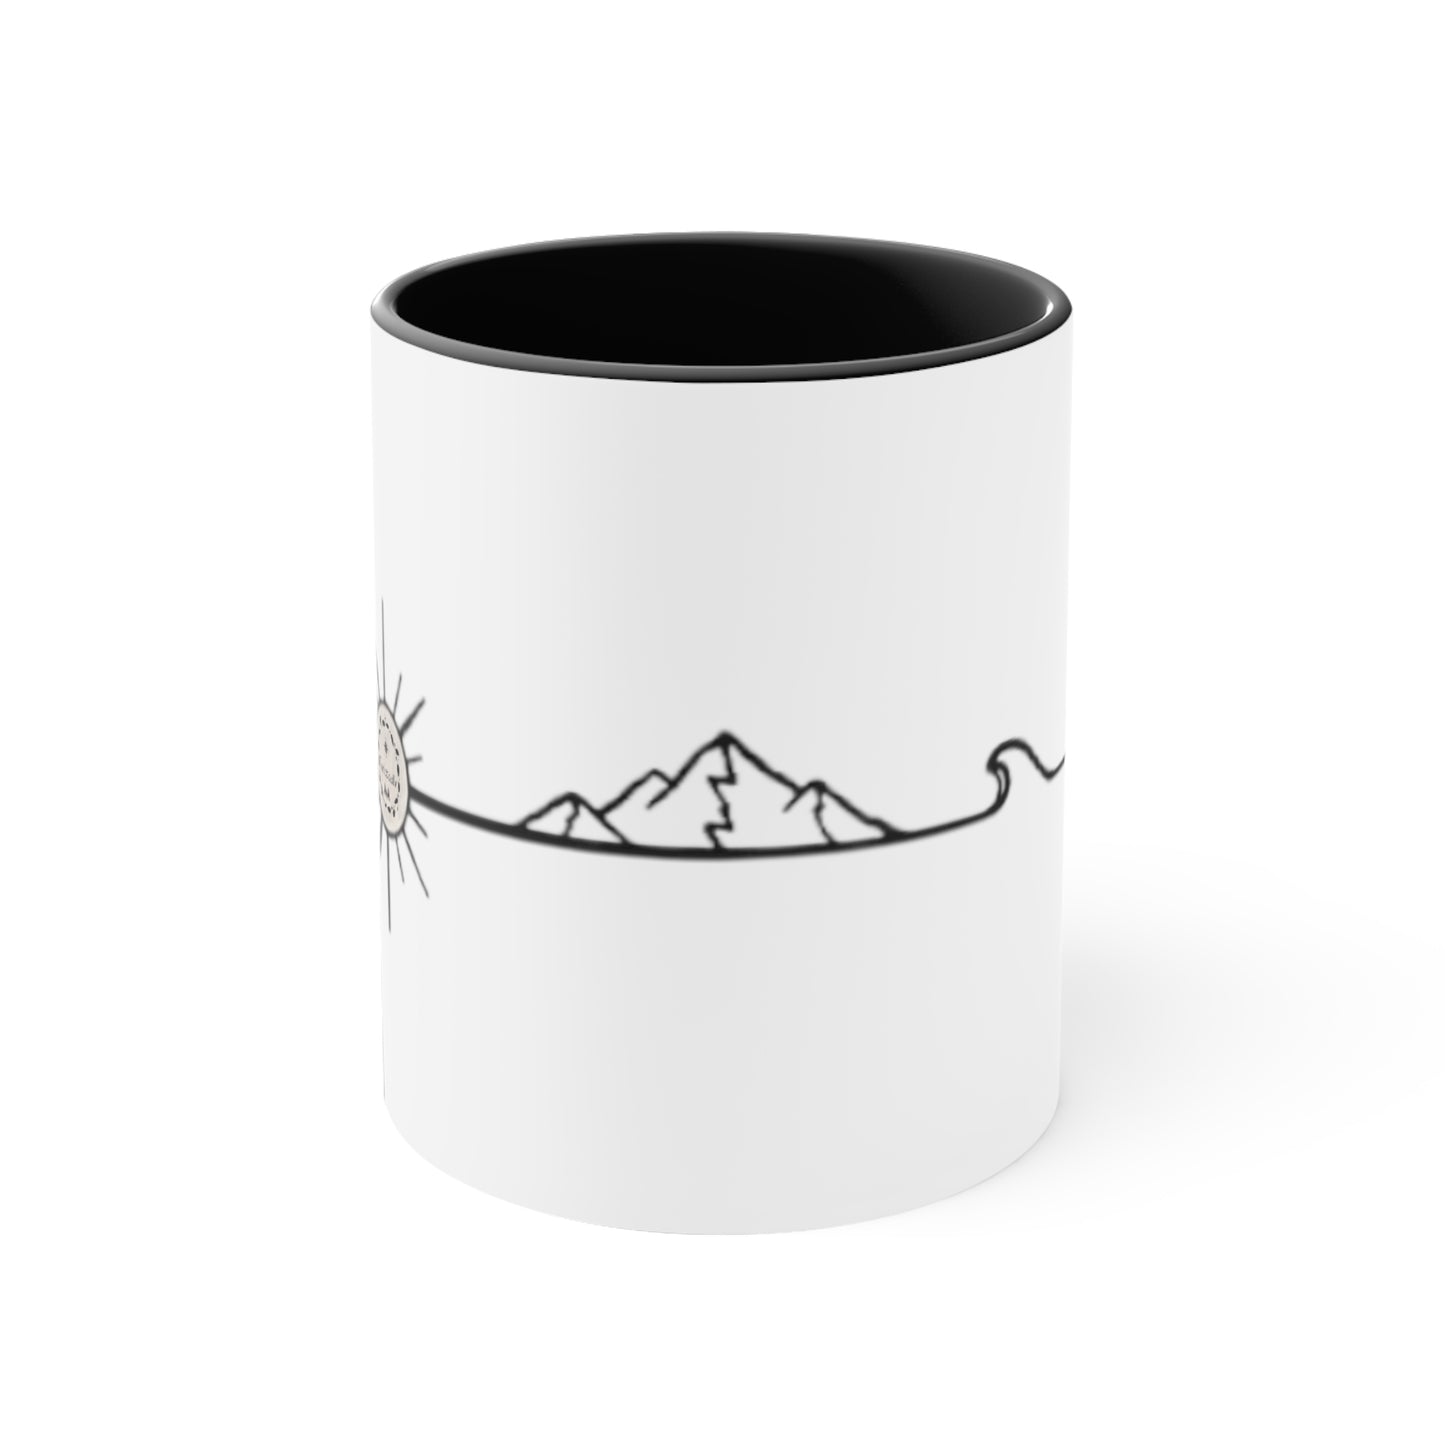 Taza de viajero, taza minimalista, regalo montaña, viajero,  regalo viajero, taza de viaje, taza de montaña, taza de regalo, taza bicolor.